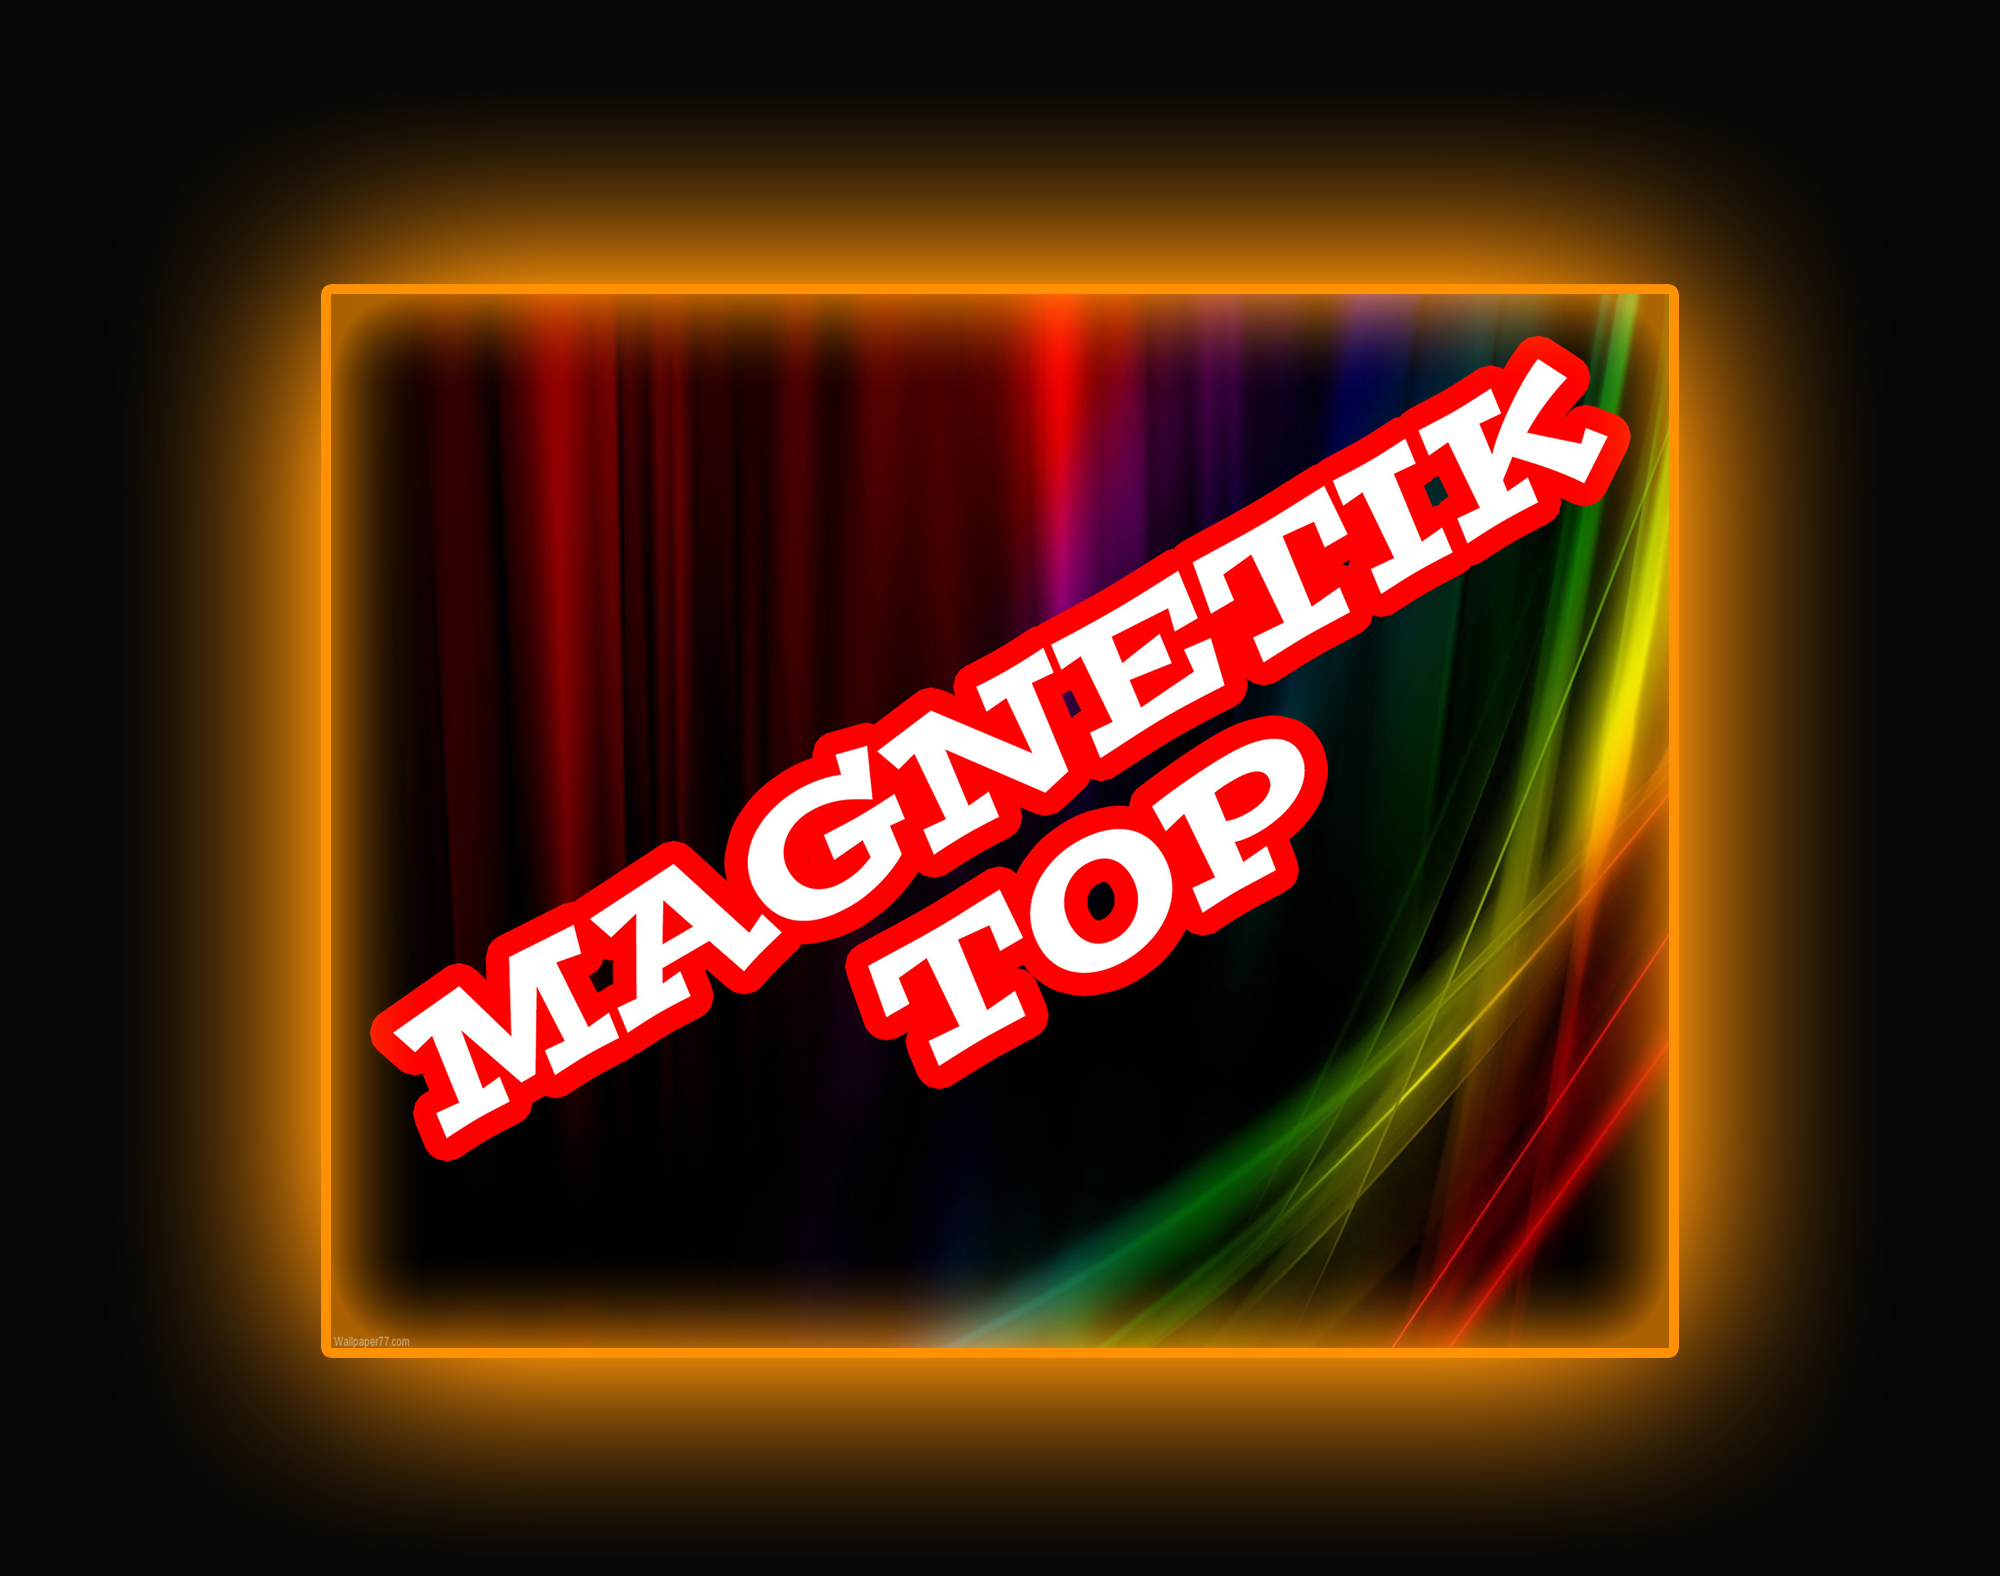 Autocollant magnétique / Magnetic sticker